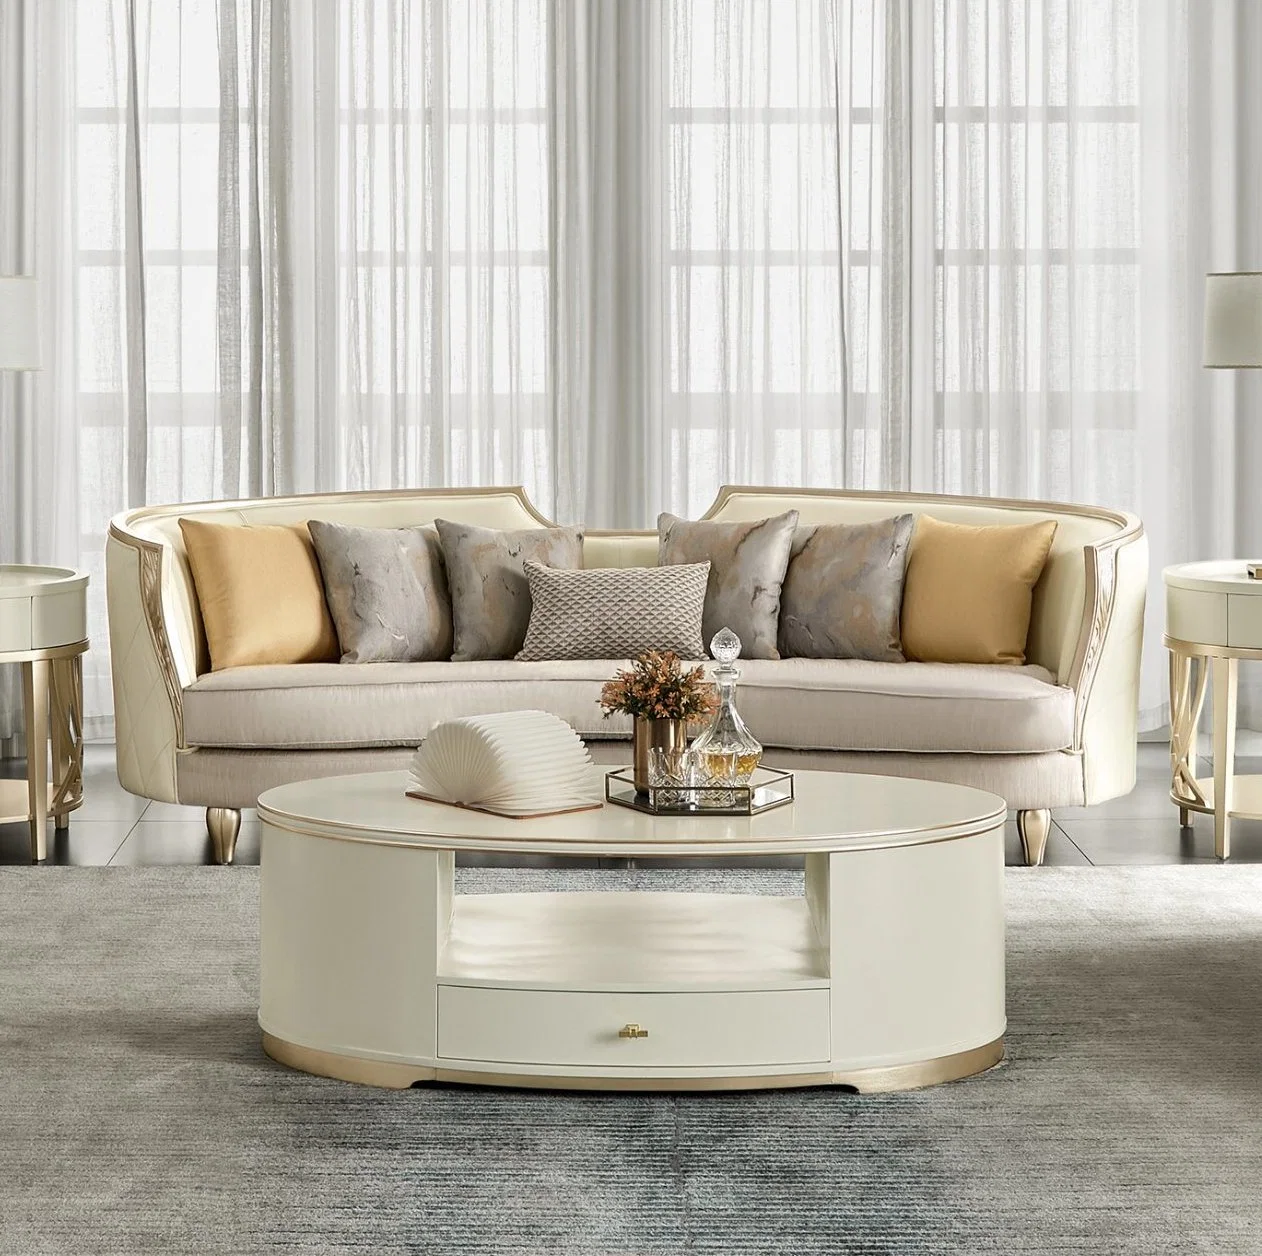 Vente chaude de meubles de maison modernes, canapé en bois de luxe pour salon, en cuir ou en tissu, sectionnel